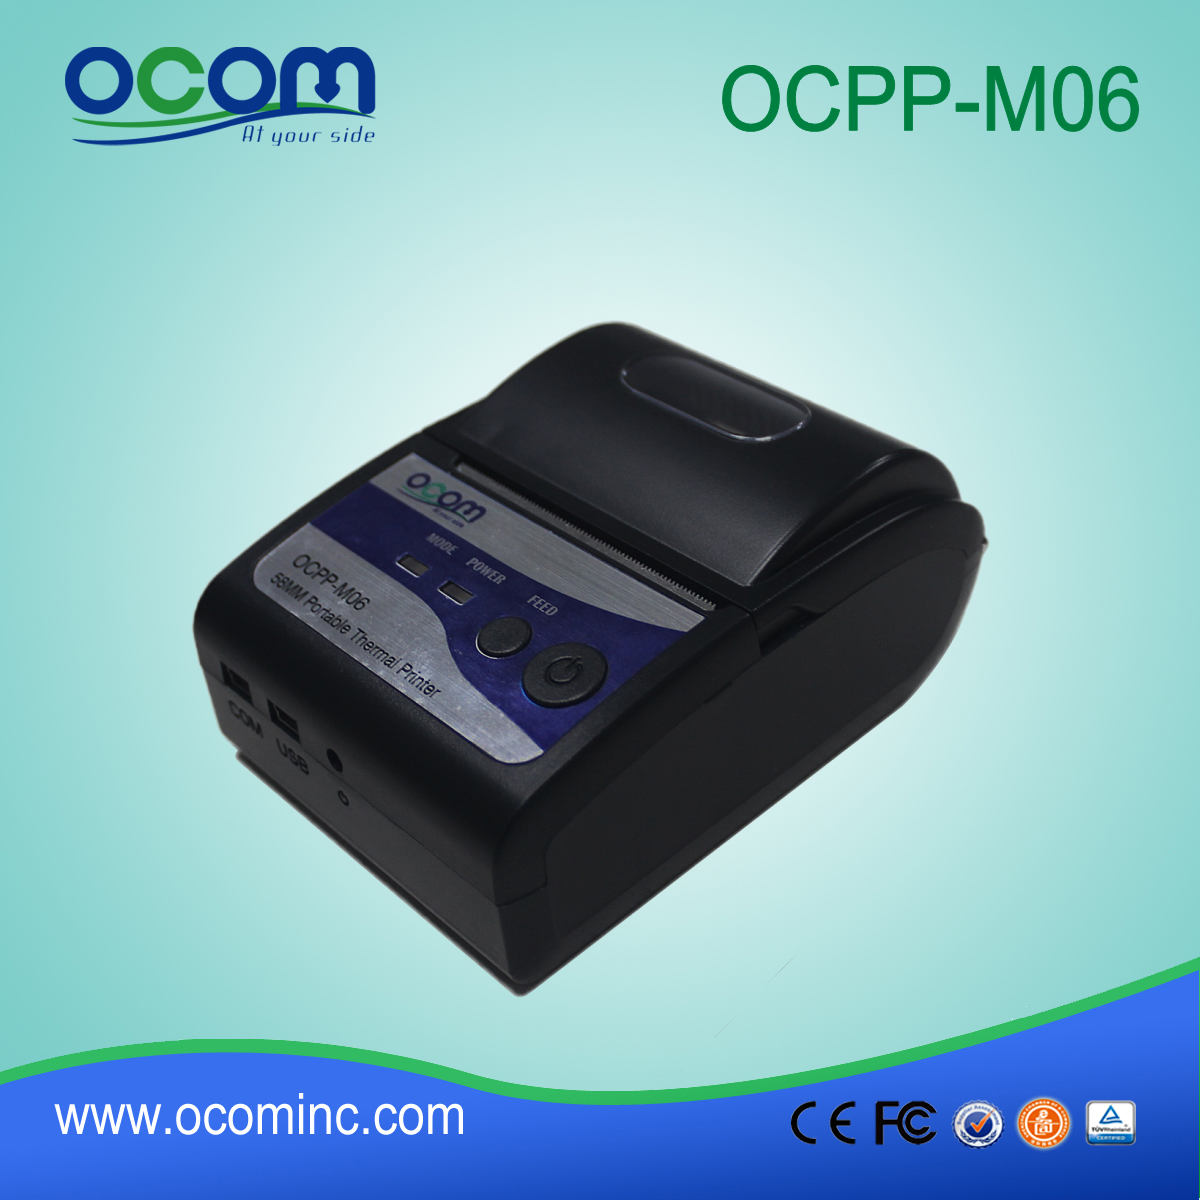 OCPP-M06: Chiński cheapeast drukarki OCOM 58mm poz, 58mm drukarki pos